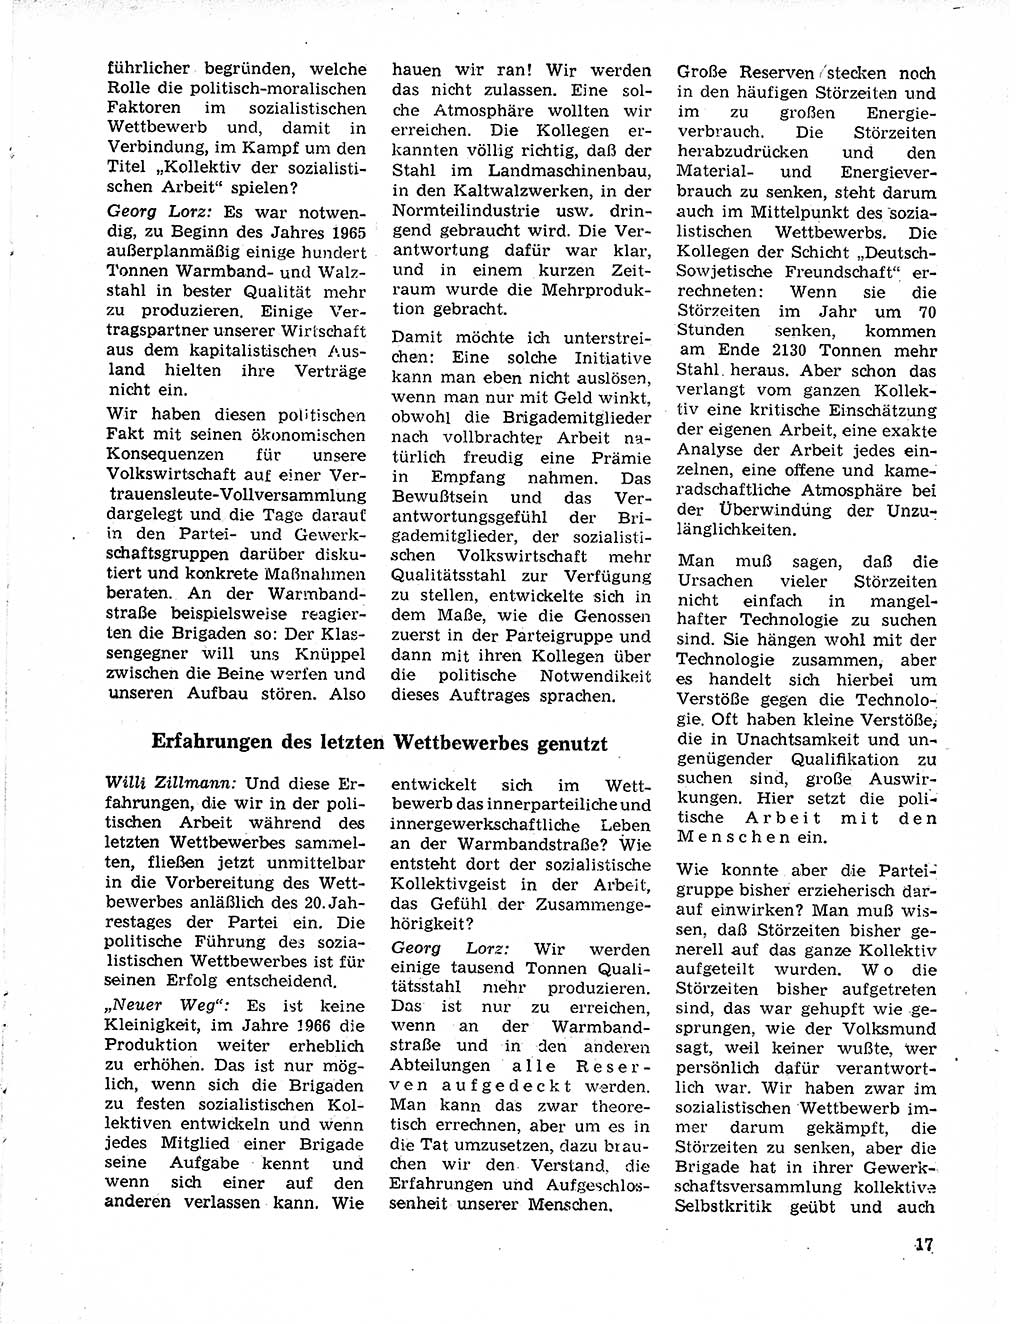 Neuer Weg (NW), Organ des Zentralkomitees (ZK) der SED (Sozialistische Einheitspartei Deutschlands) für Fragen des Parteilebens, 21. Jahrgang [Deutsche Demokratische Republik (DDR)] 1966, Seite 17 (NW ZK SED DDR 1966, S. 17)